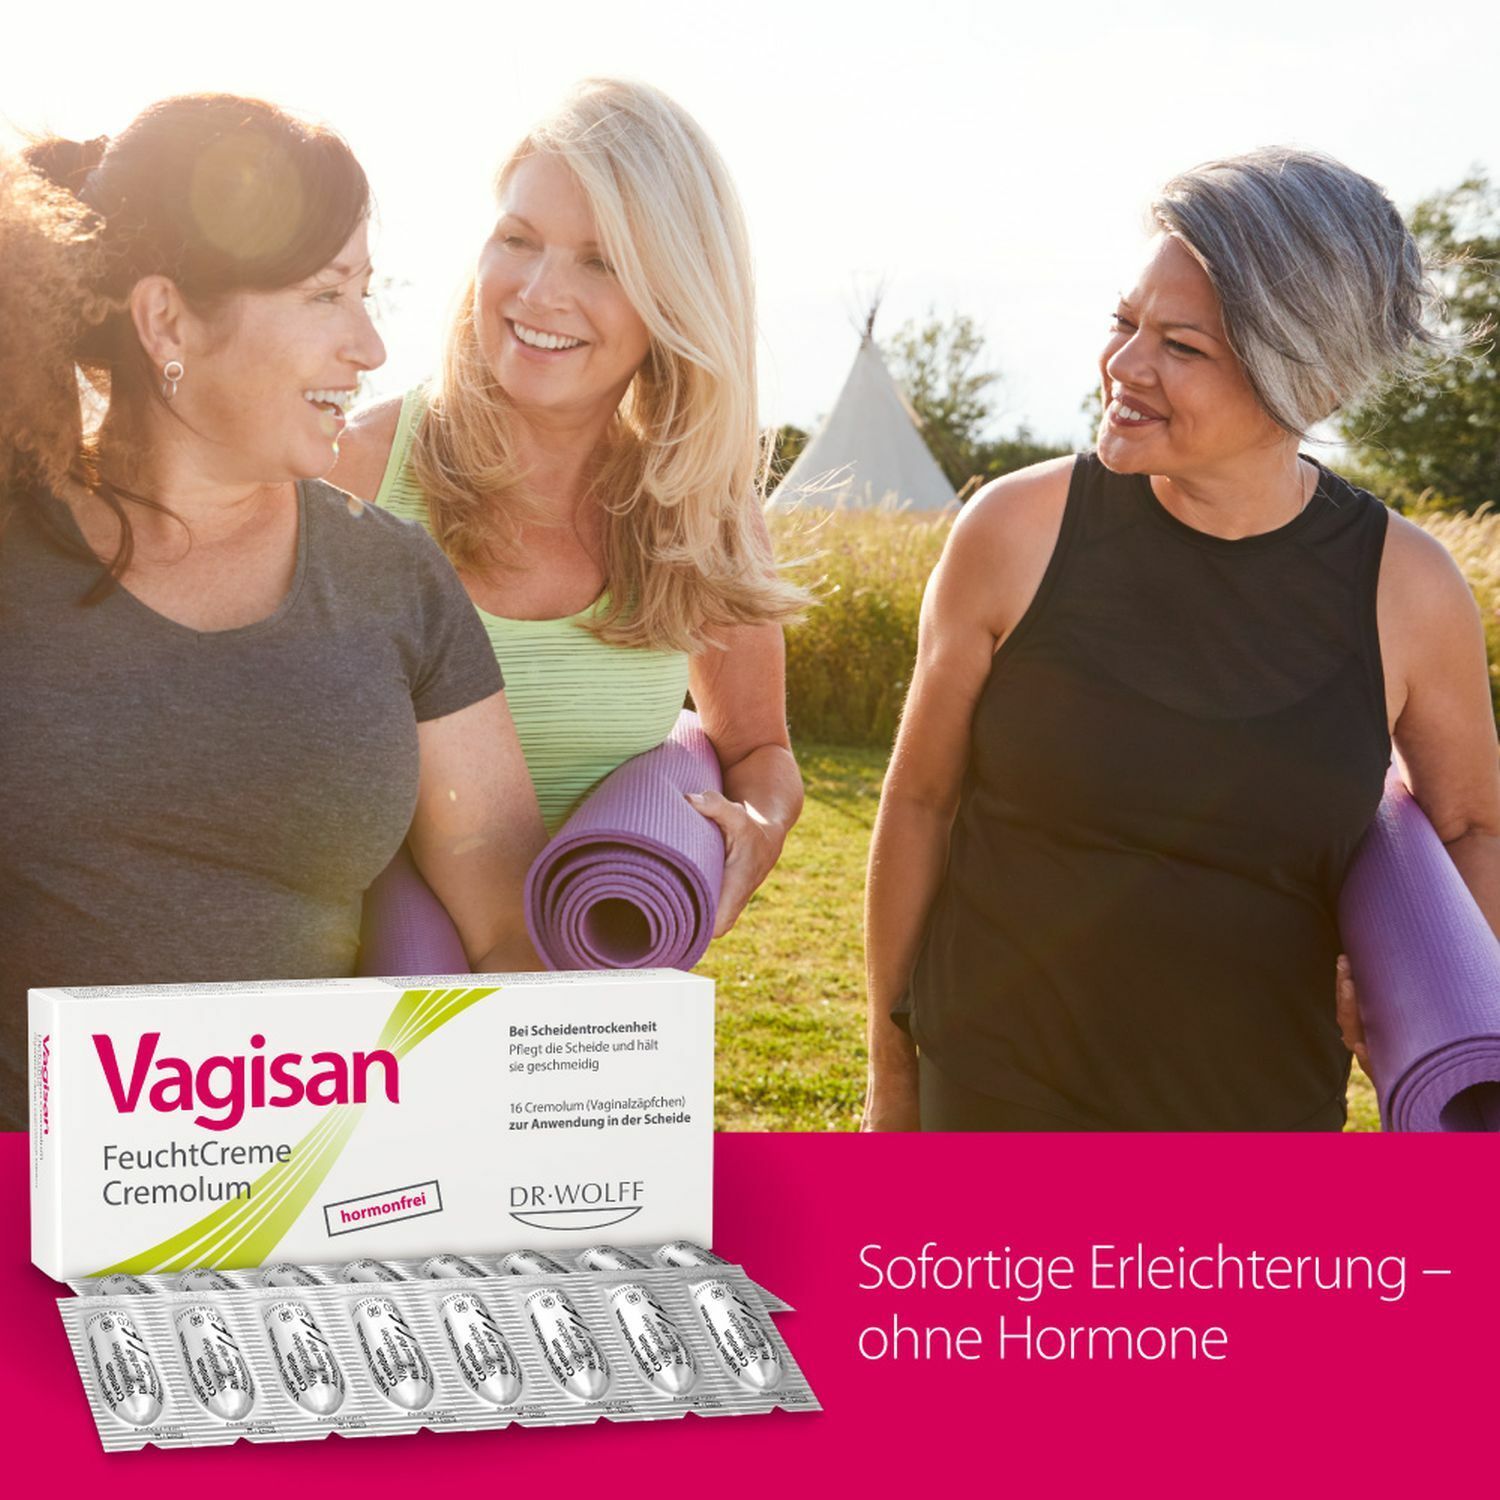 Vagisan FeuchtCreme Cremolum: Hormonfreies Vaginalzäpfchen bei trockener Scheide – schnelle Linderung & einfache Anwendung